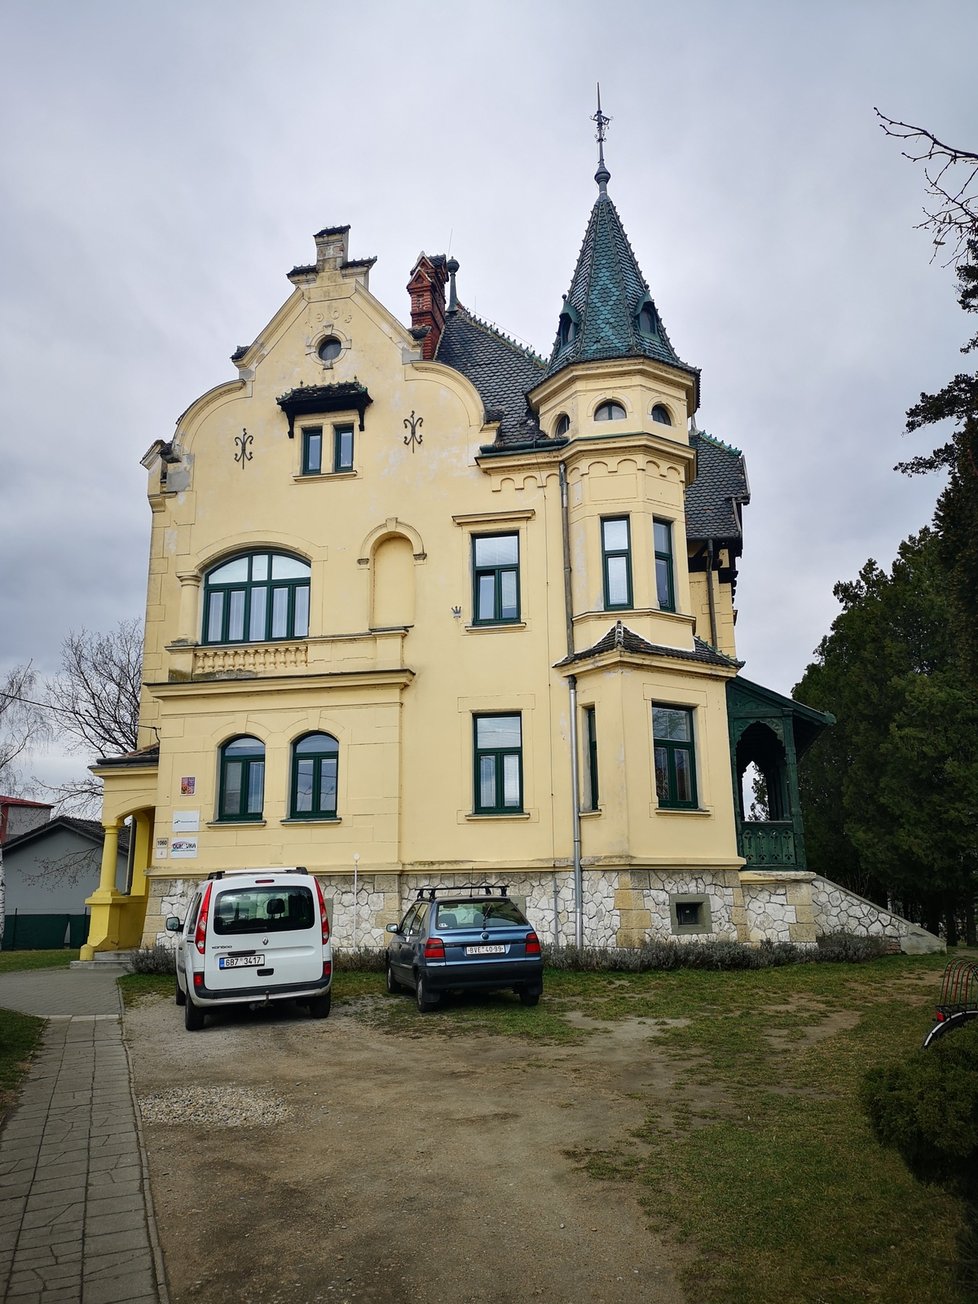 Tzv. Hvězdova vila v Břeclavi má od krupobití v červnu 2021 děravou střechu. Původní tašky už nejde použít, nahradí je plech.